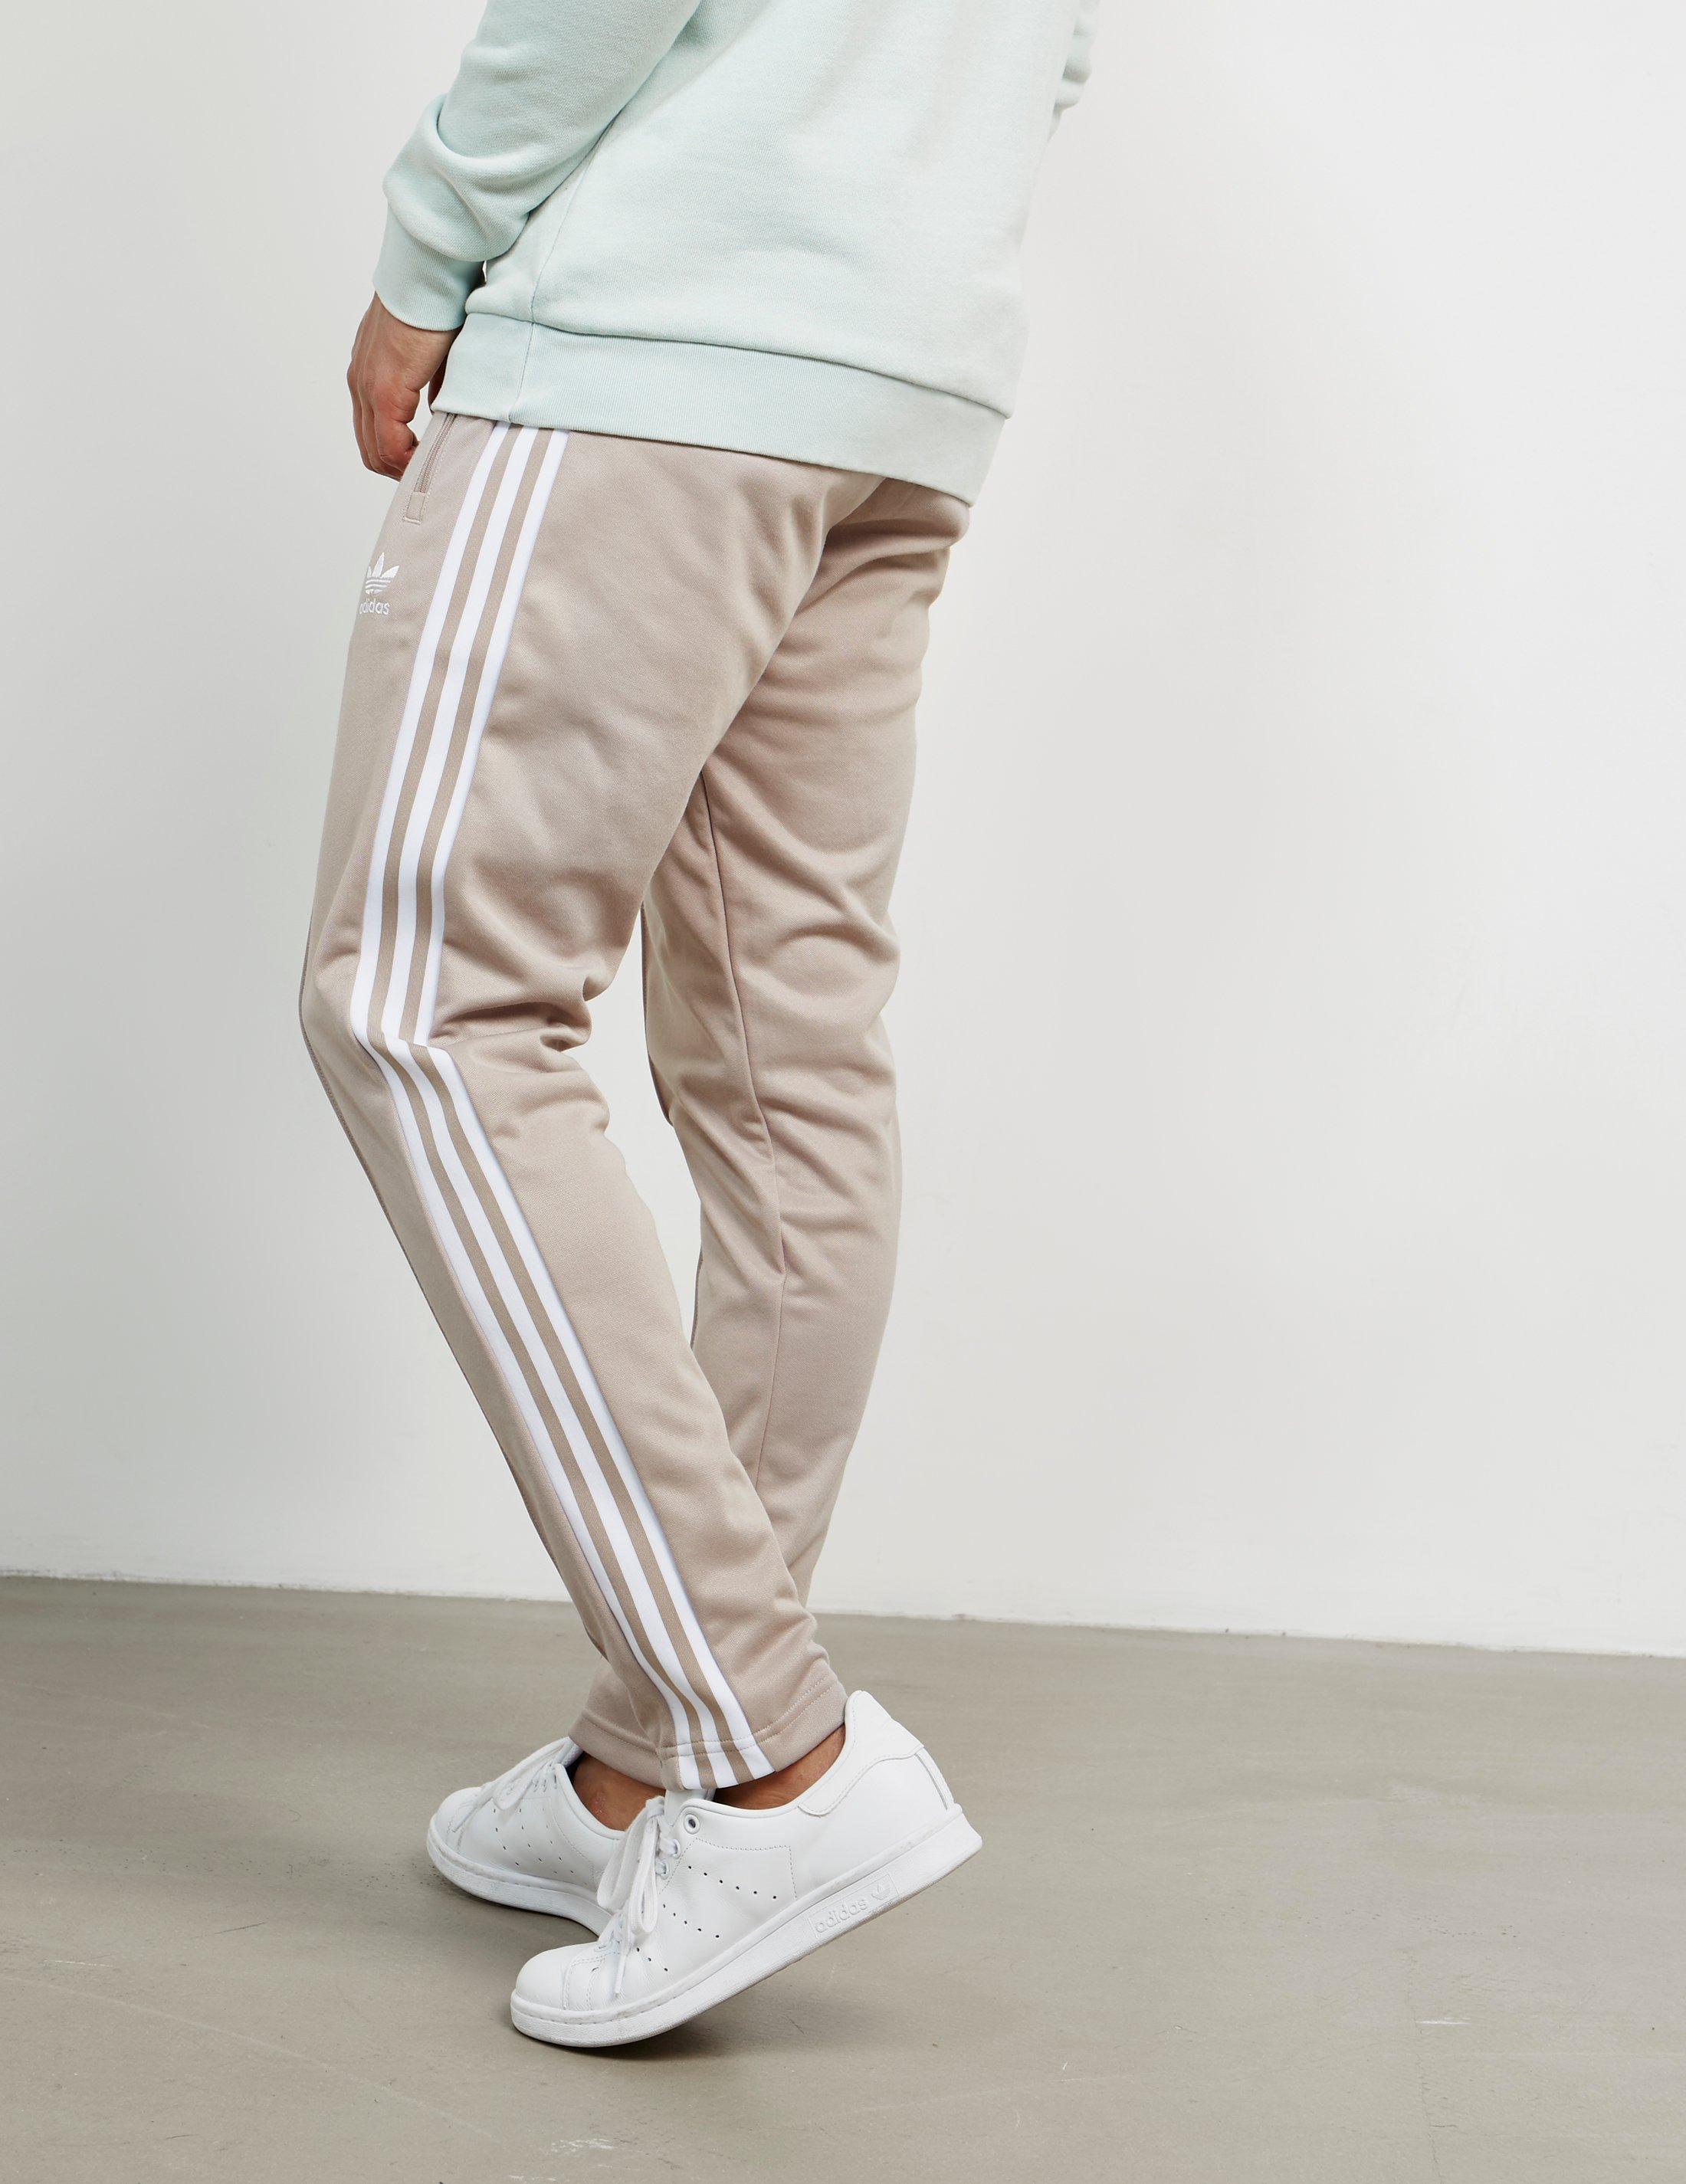 adidas beckenbauer pants grey